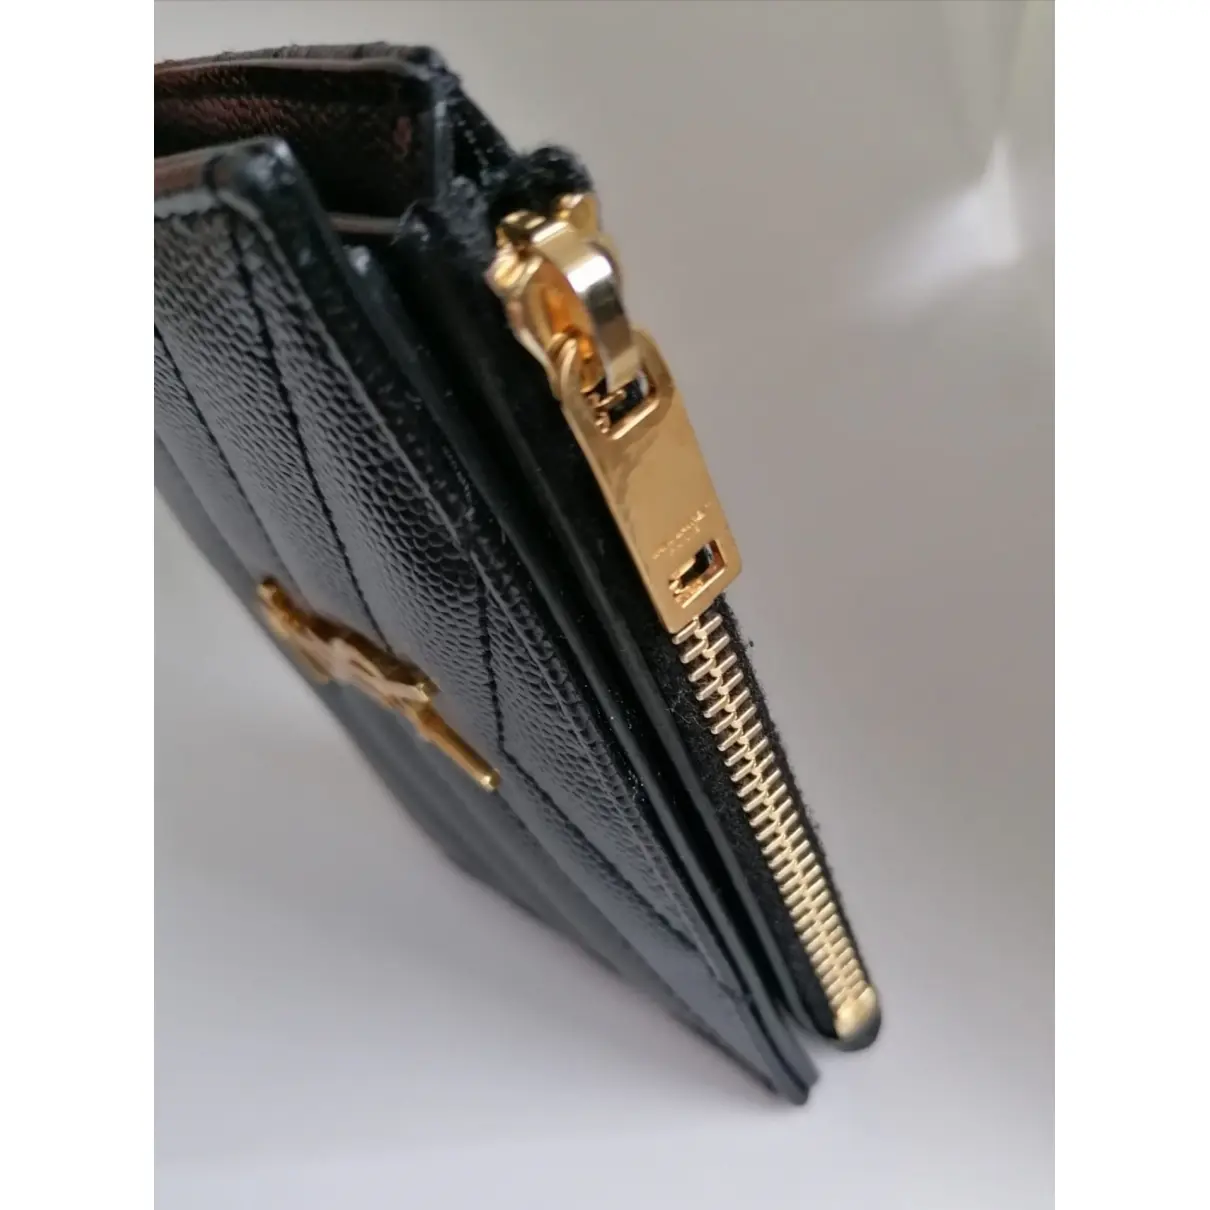 Monogramme leather wallet Saint Laurent